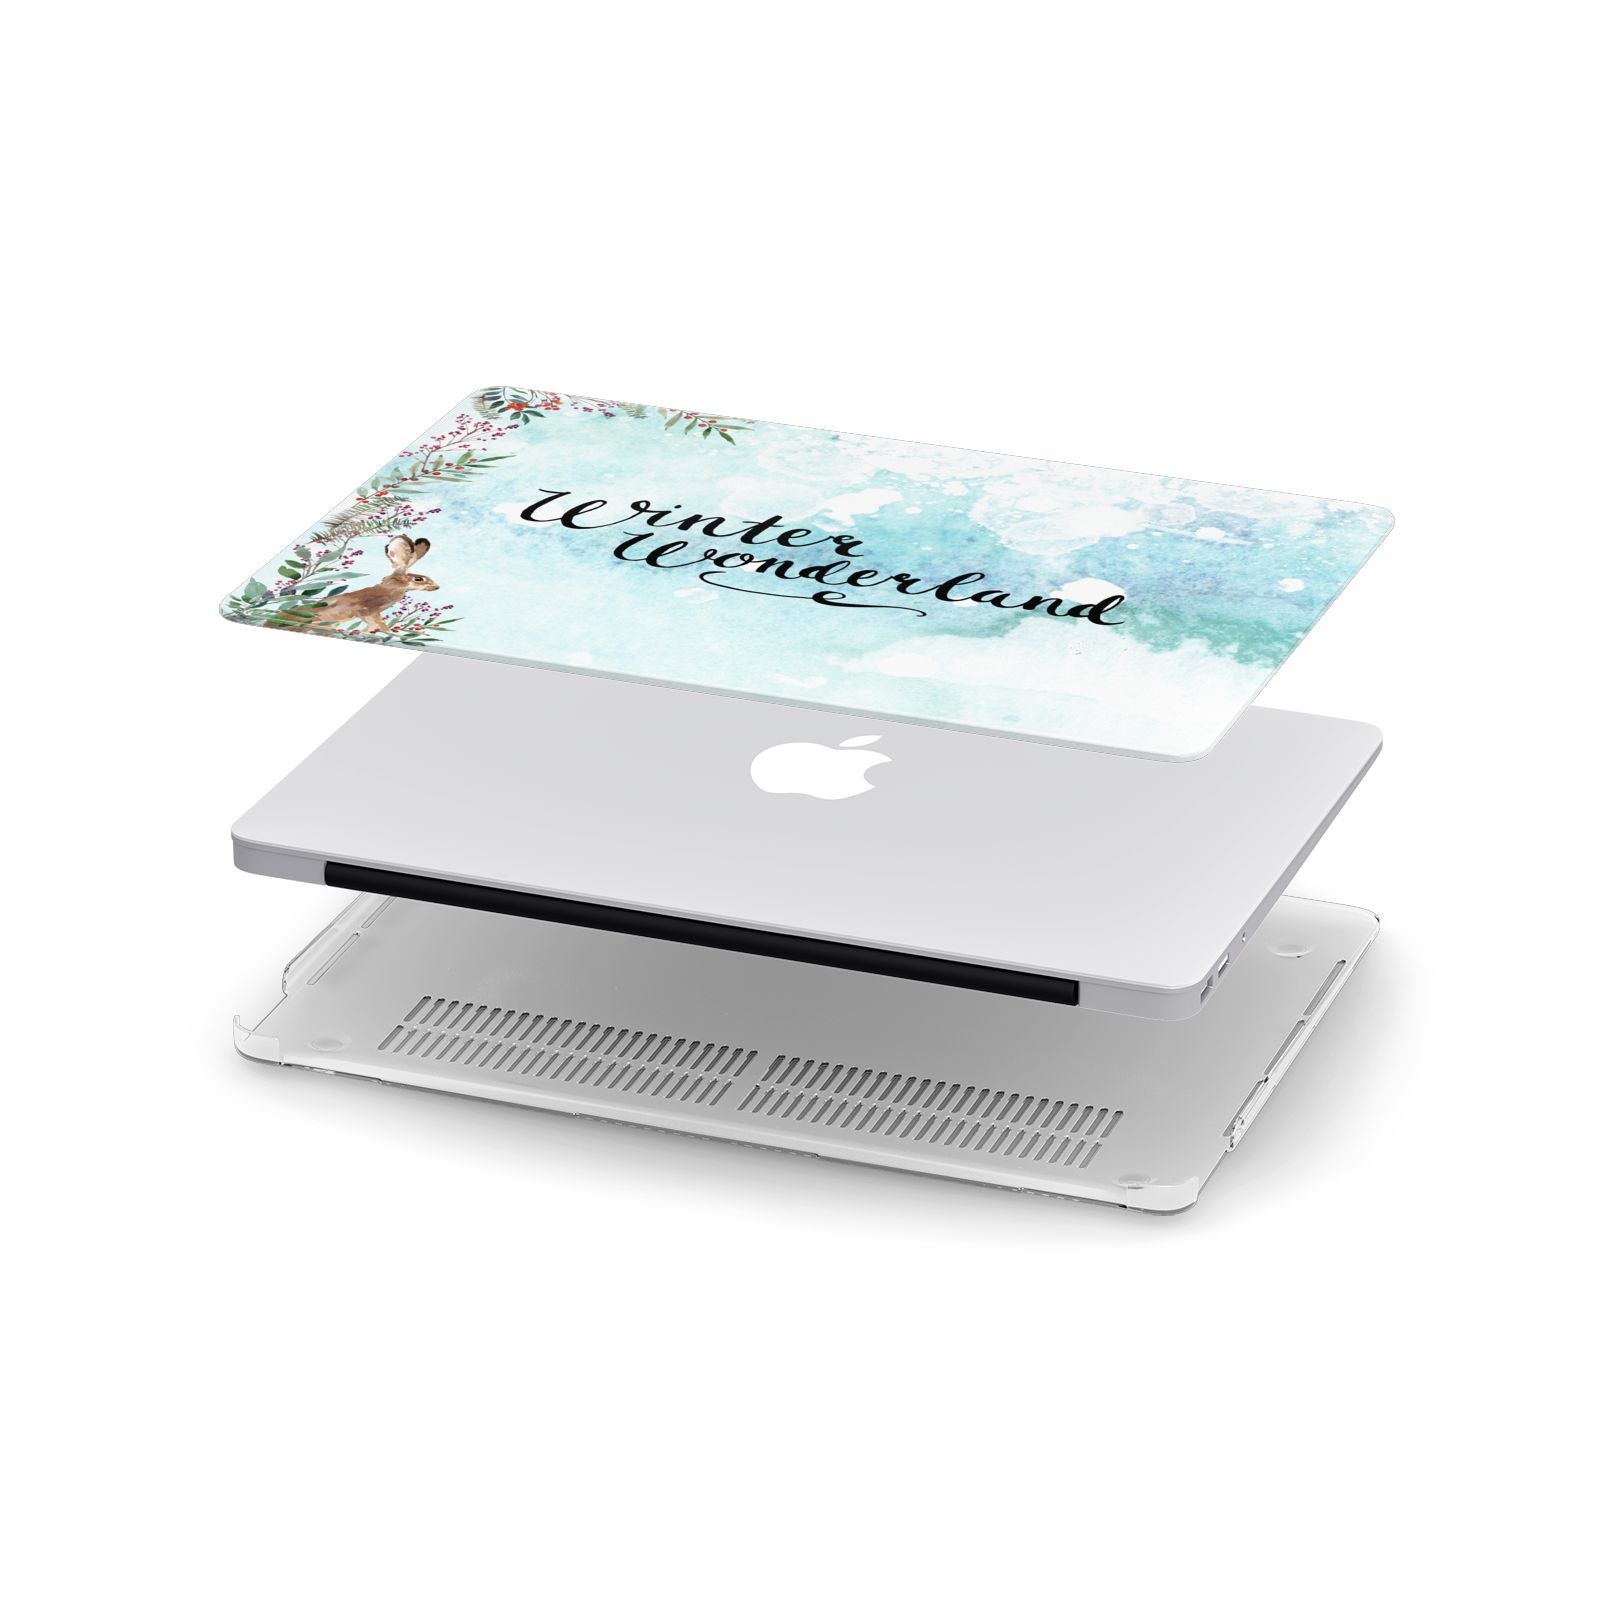 Winter Wonderland Hare Apple MacBook Case in Detail